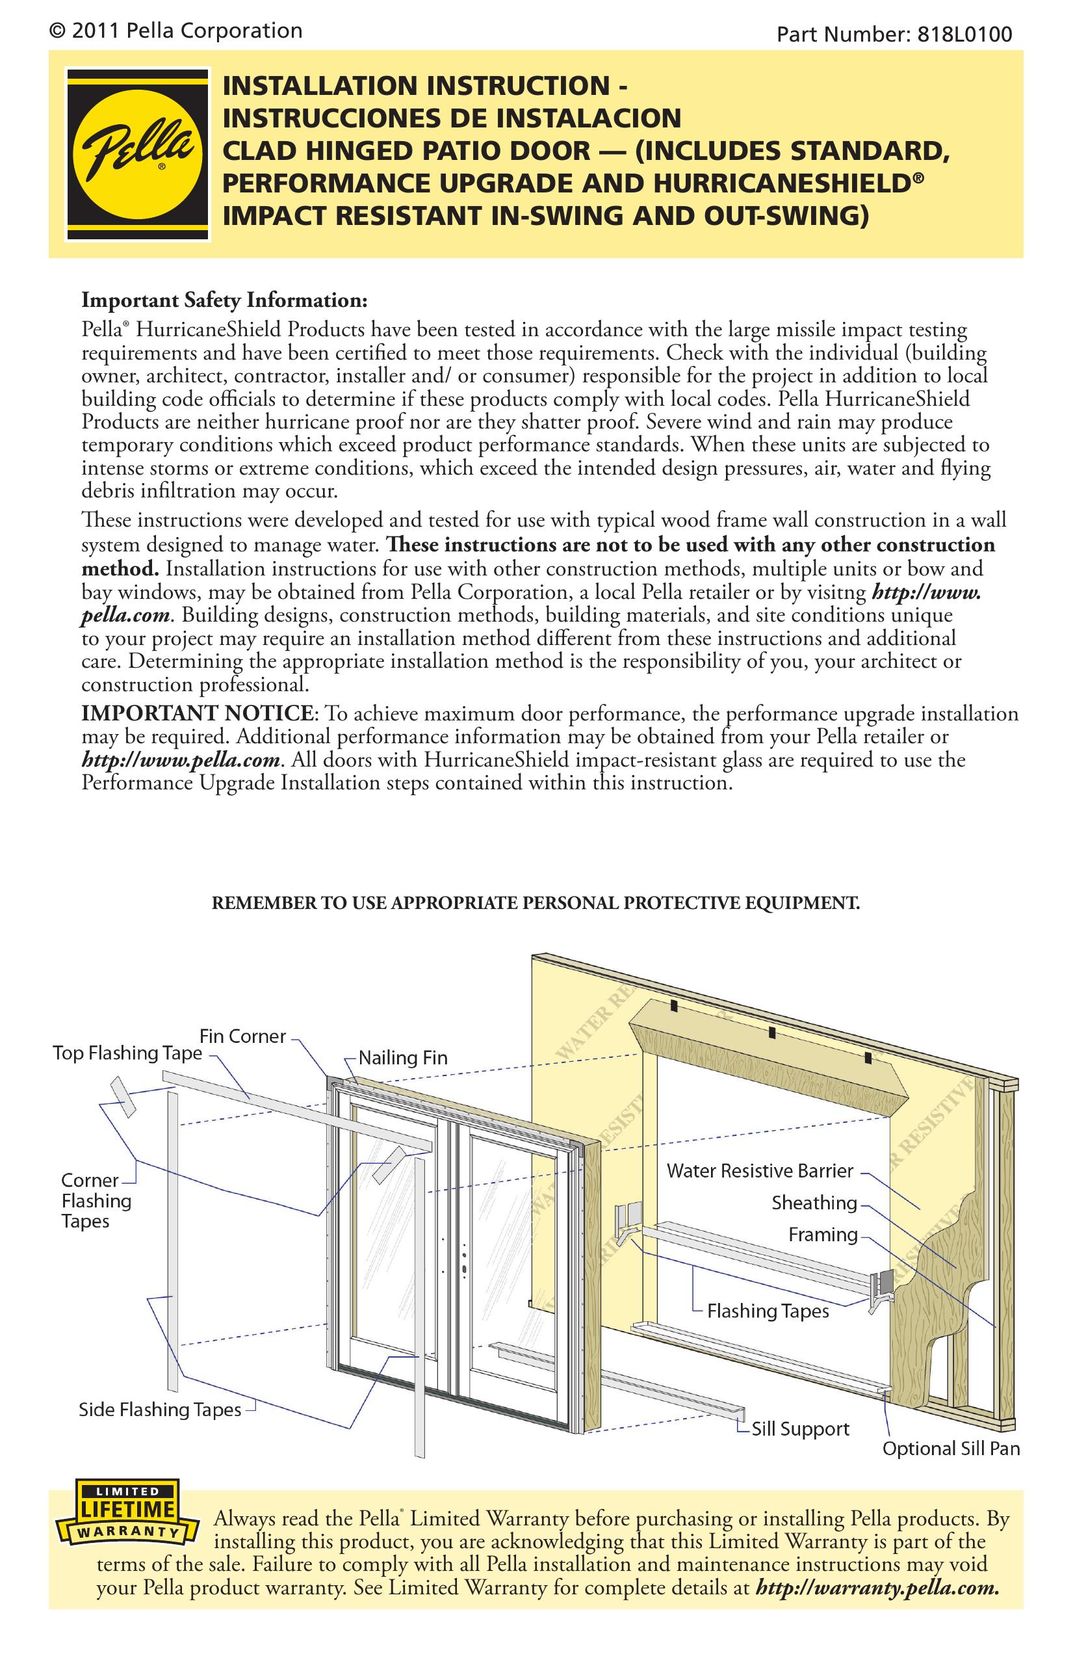 Pella 818L0100 Window User Manual